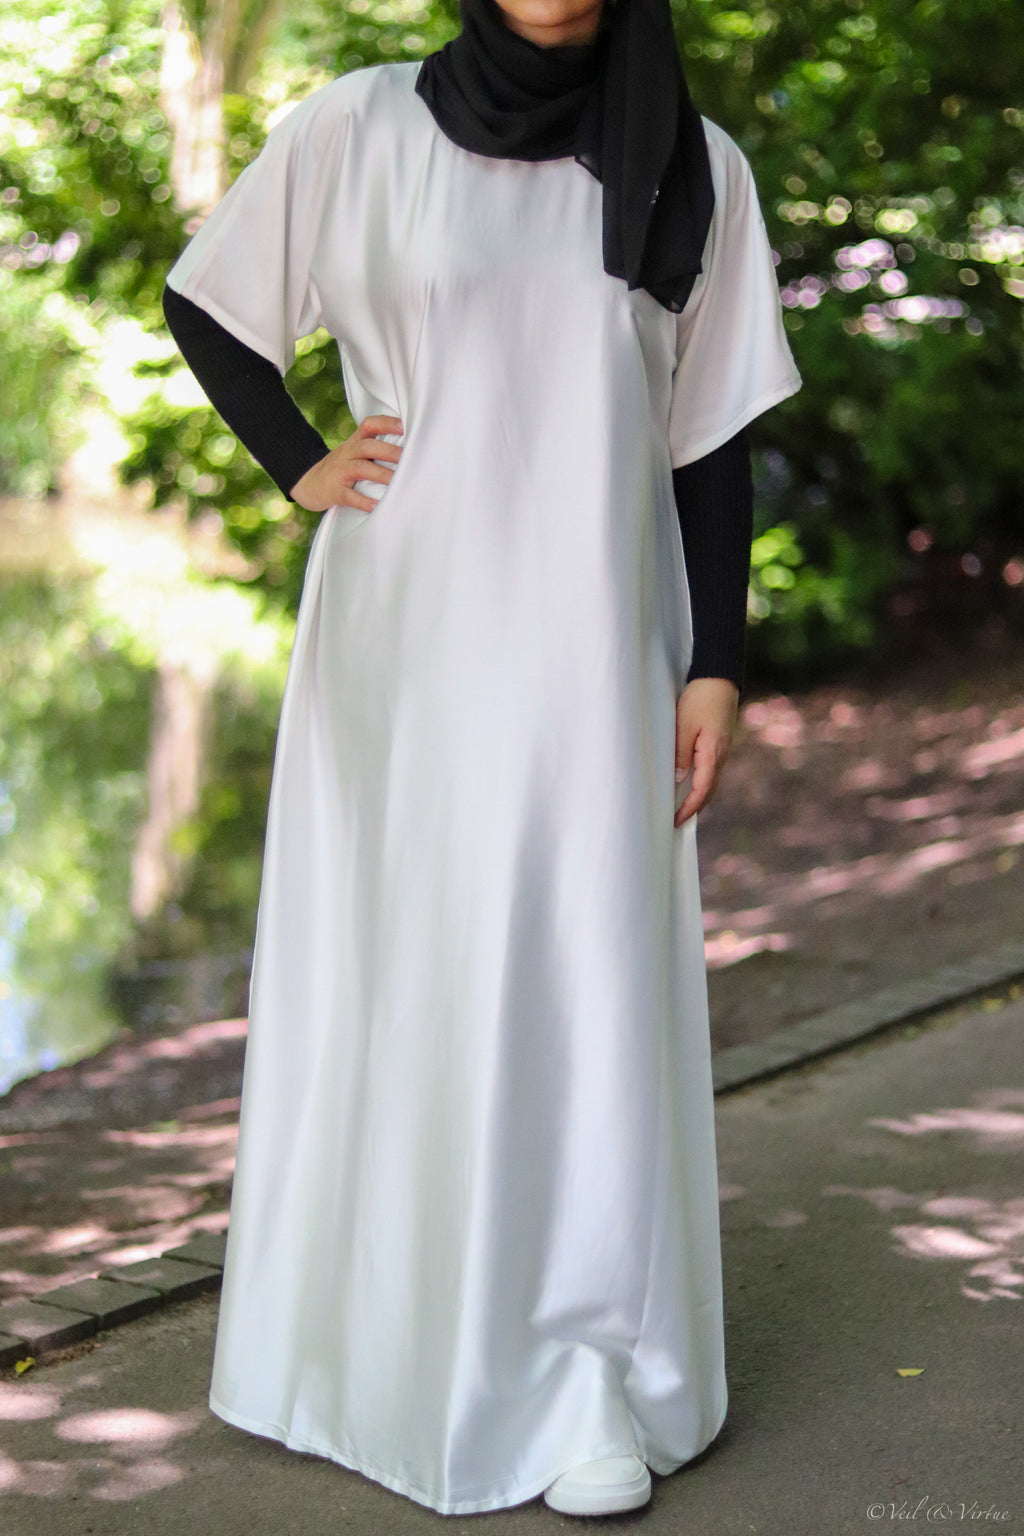 Buy WHITE SLEEVELESS JEWEL-NECK SHIFT DRESS for Women Online in India